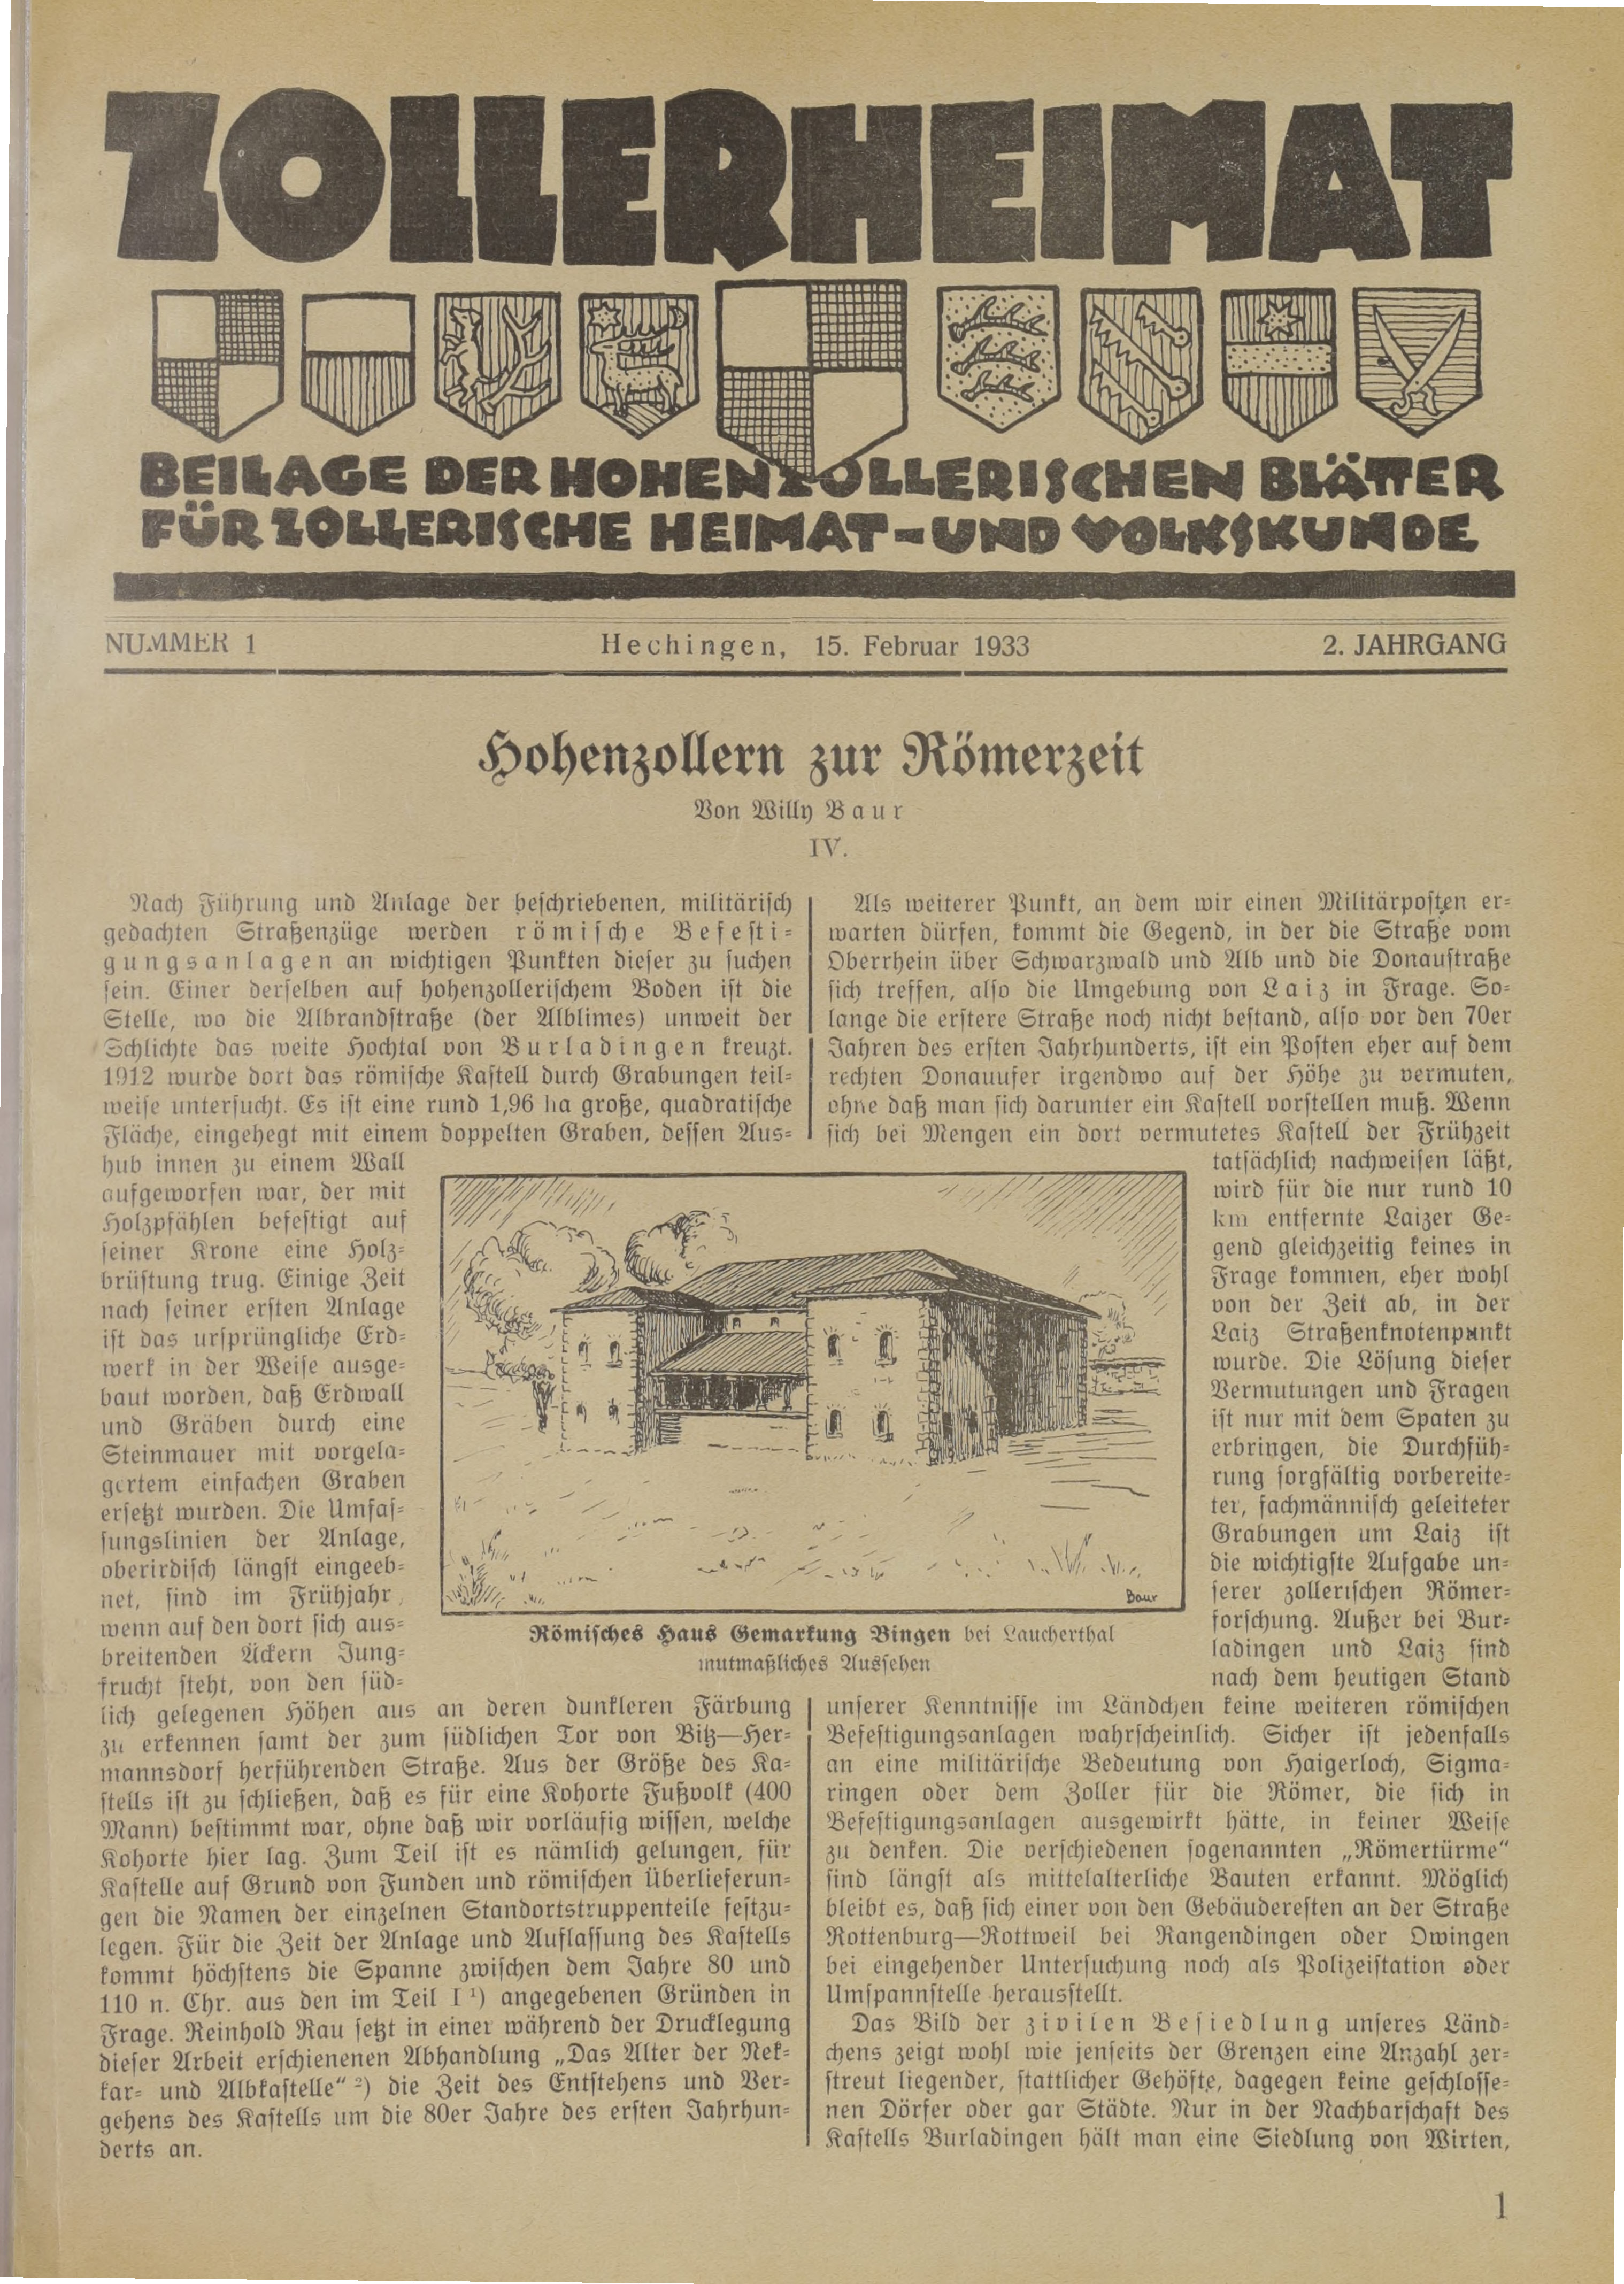                     Ansehen Bd. 2 Nr. 1 (1933): Zollerheimat
                